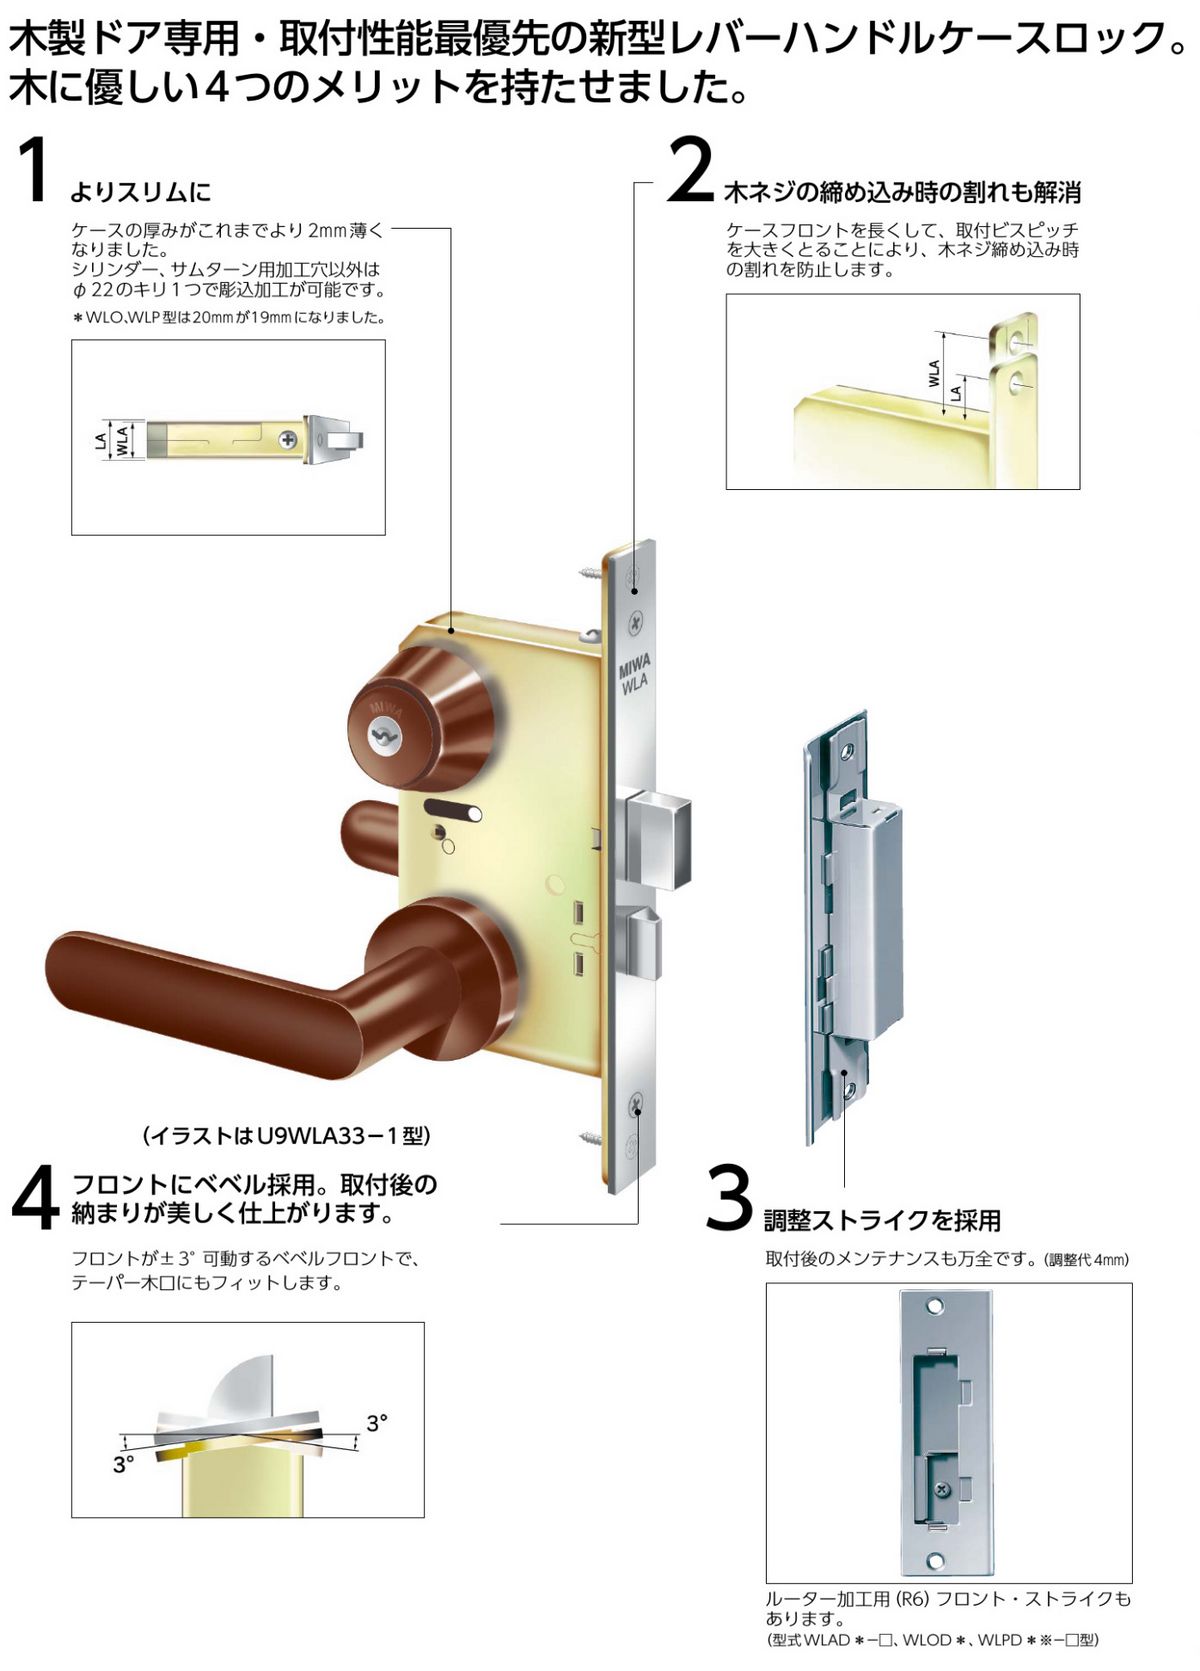 美和ロック Miwa Wlo木製ドア用レバーハンドル空錠が激安卸売です